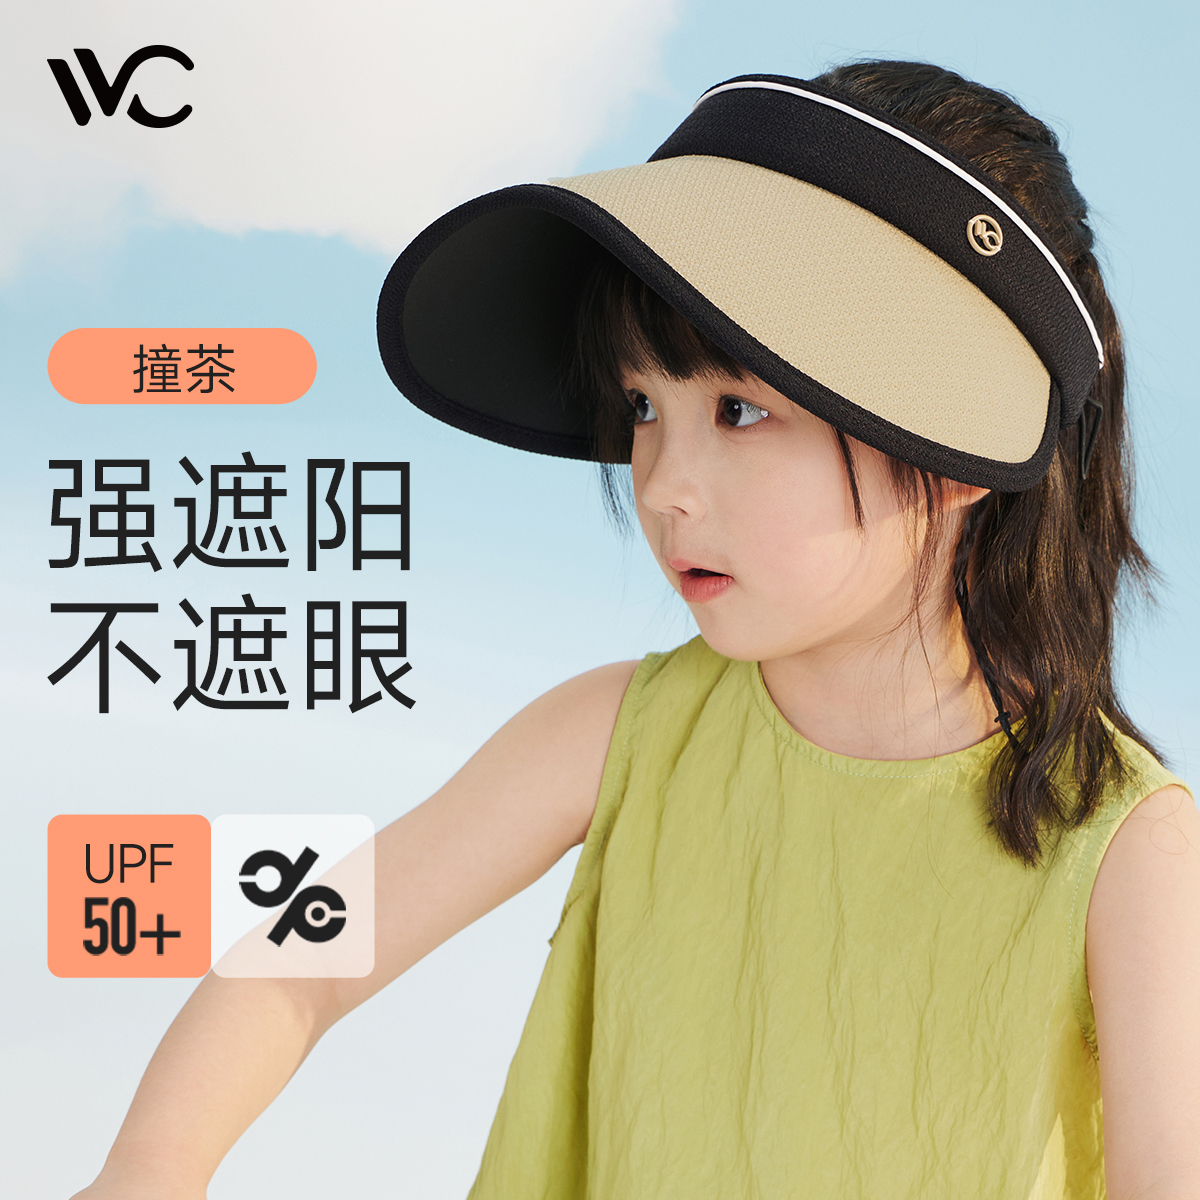 VVC儿童防晒帽防紫外线女童大檐遮阳帽夏季太阳帽男宝宝空顶帽子